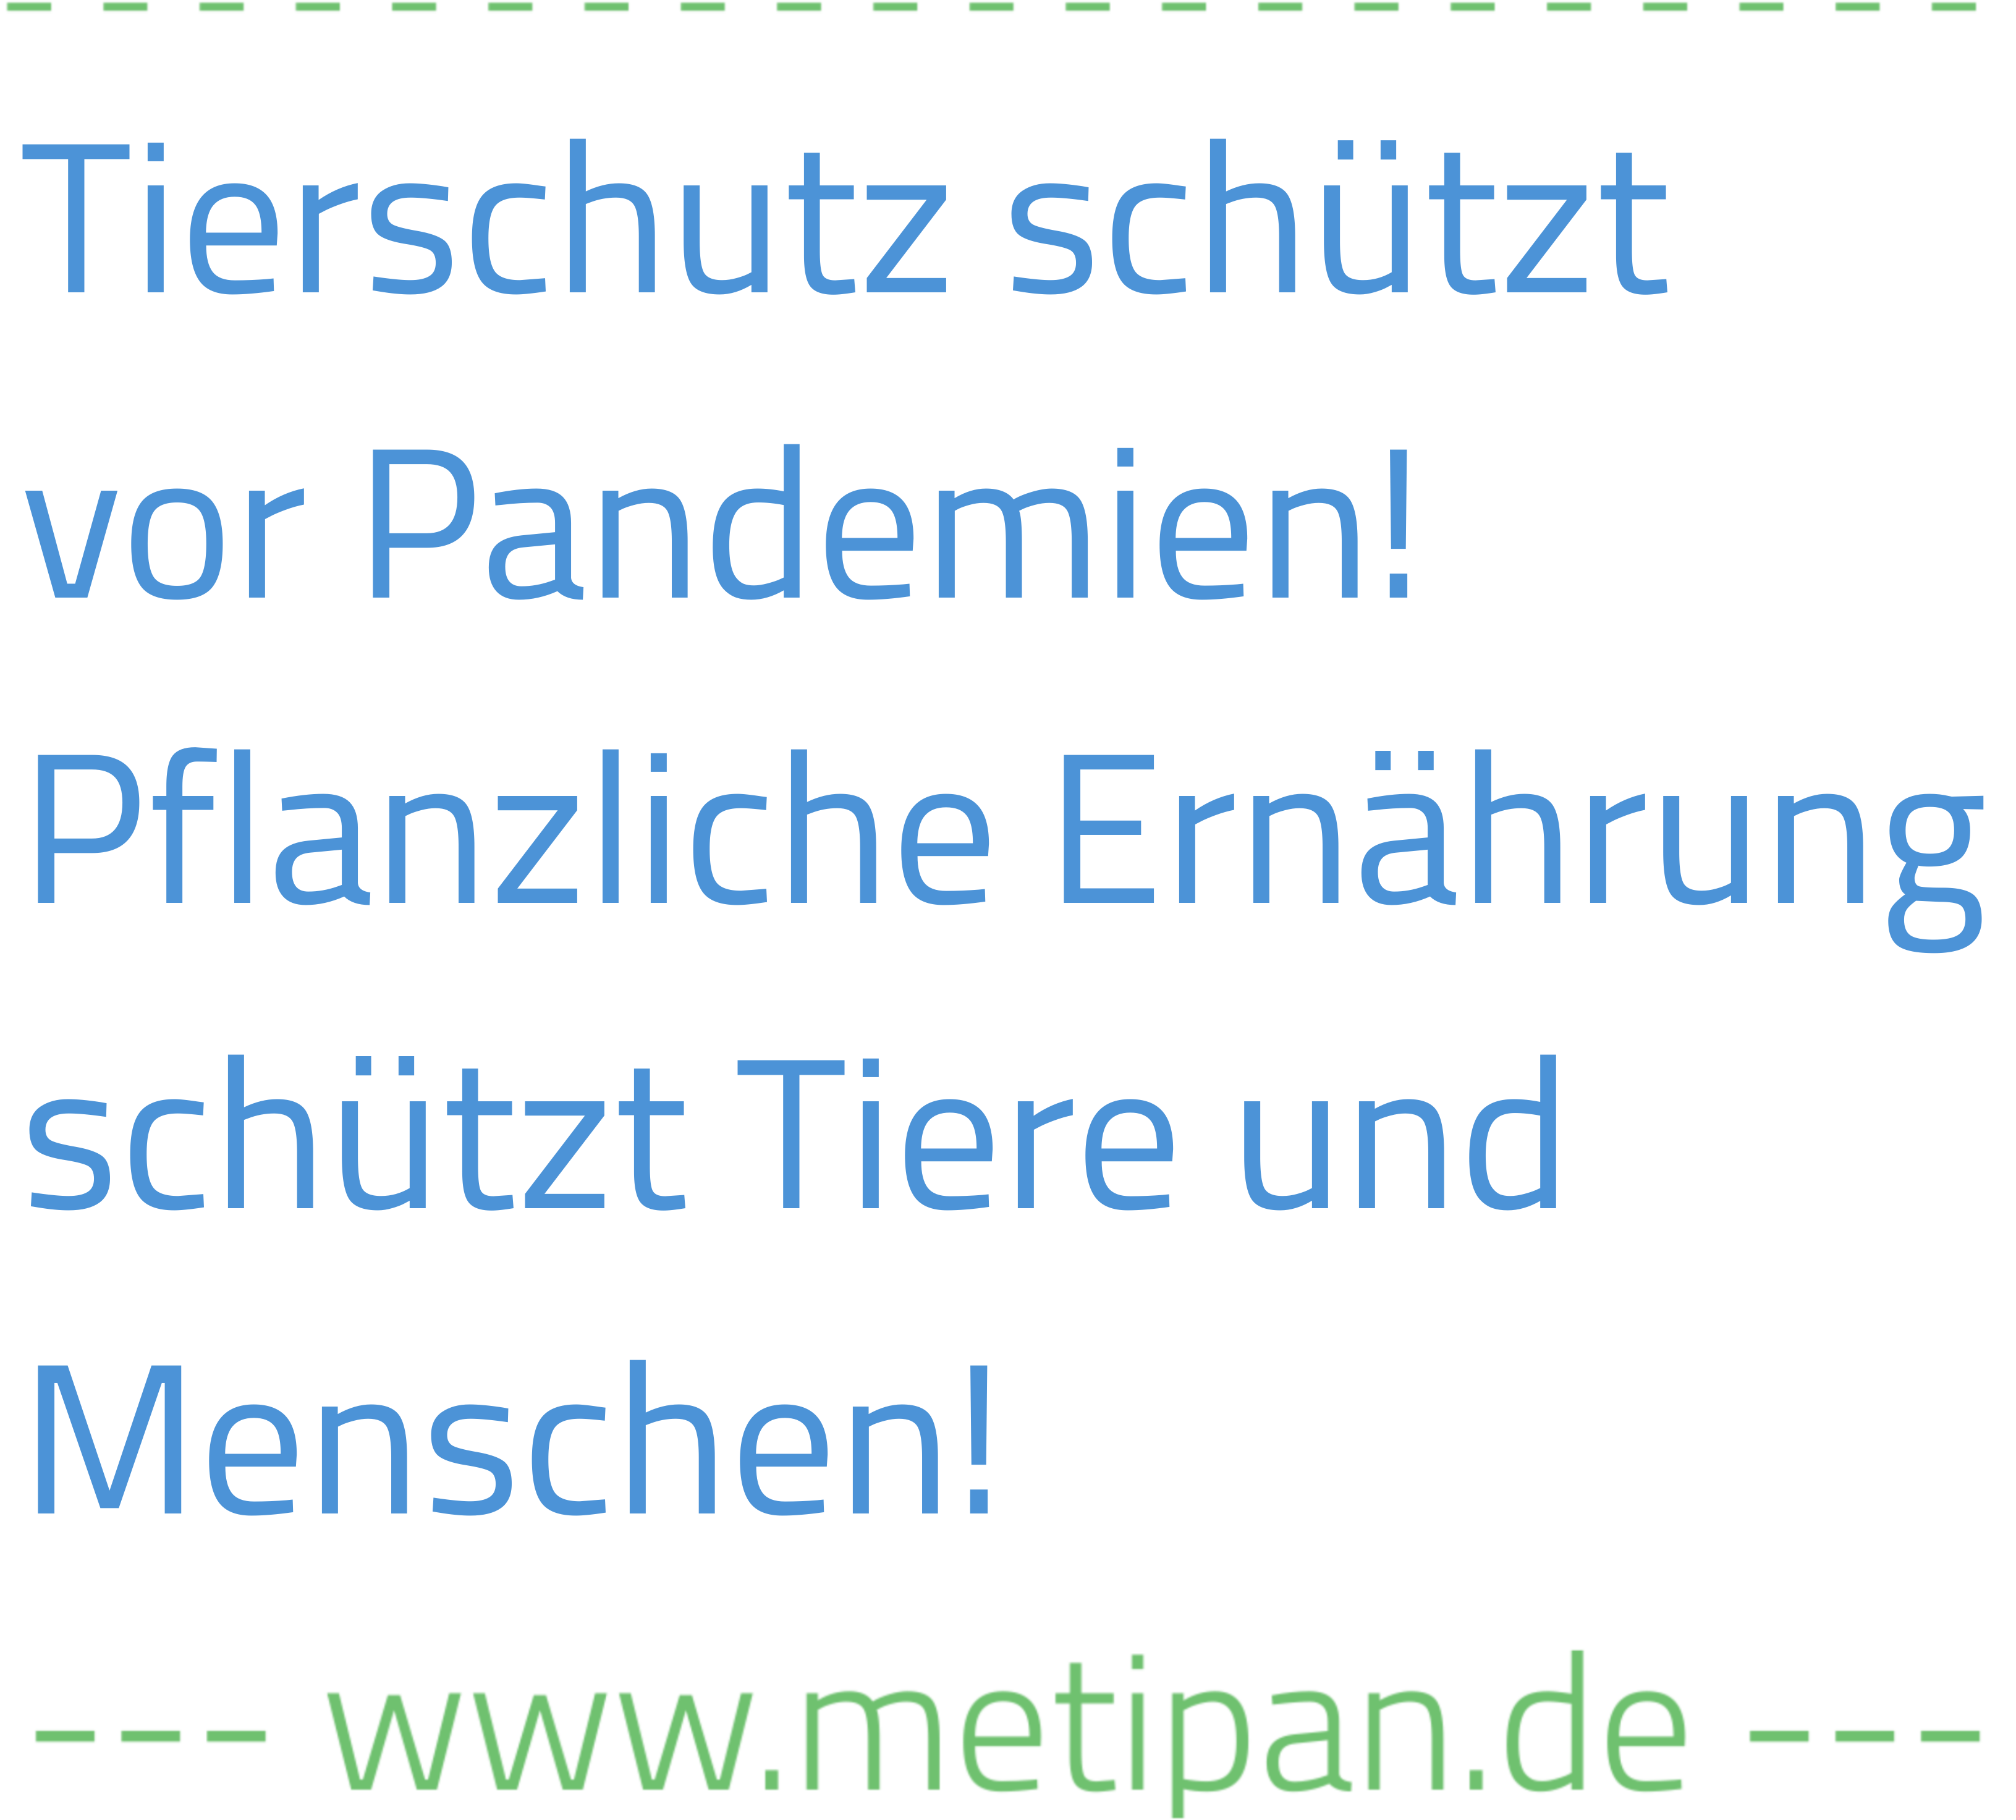 Text: Tierschutz schützt vor Pandemien! Pflanzliche Ernährung schützt Tiere und Menschen! www.metipan.de"